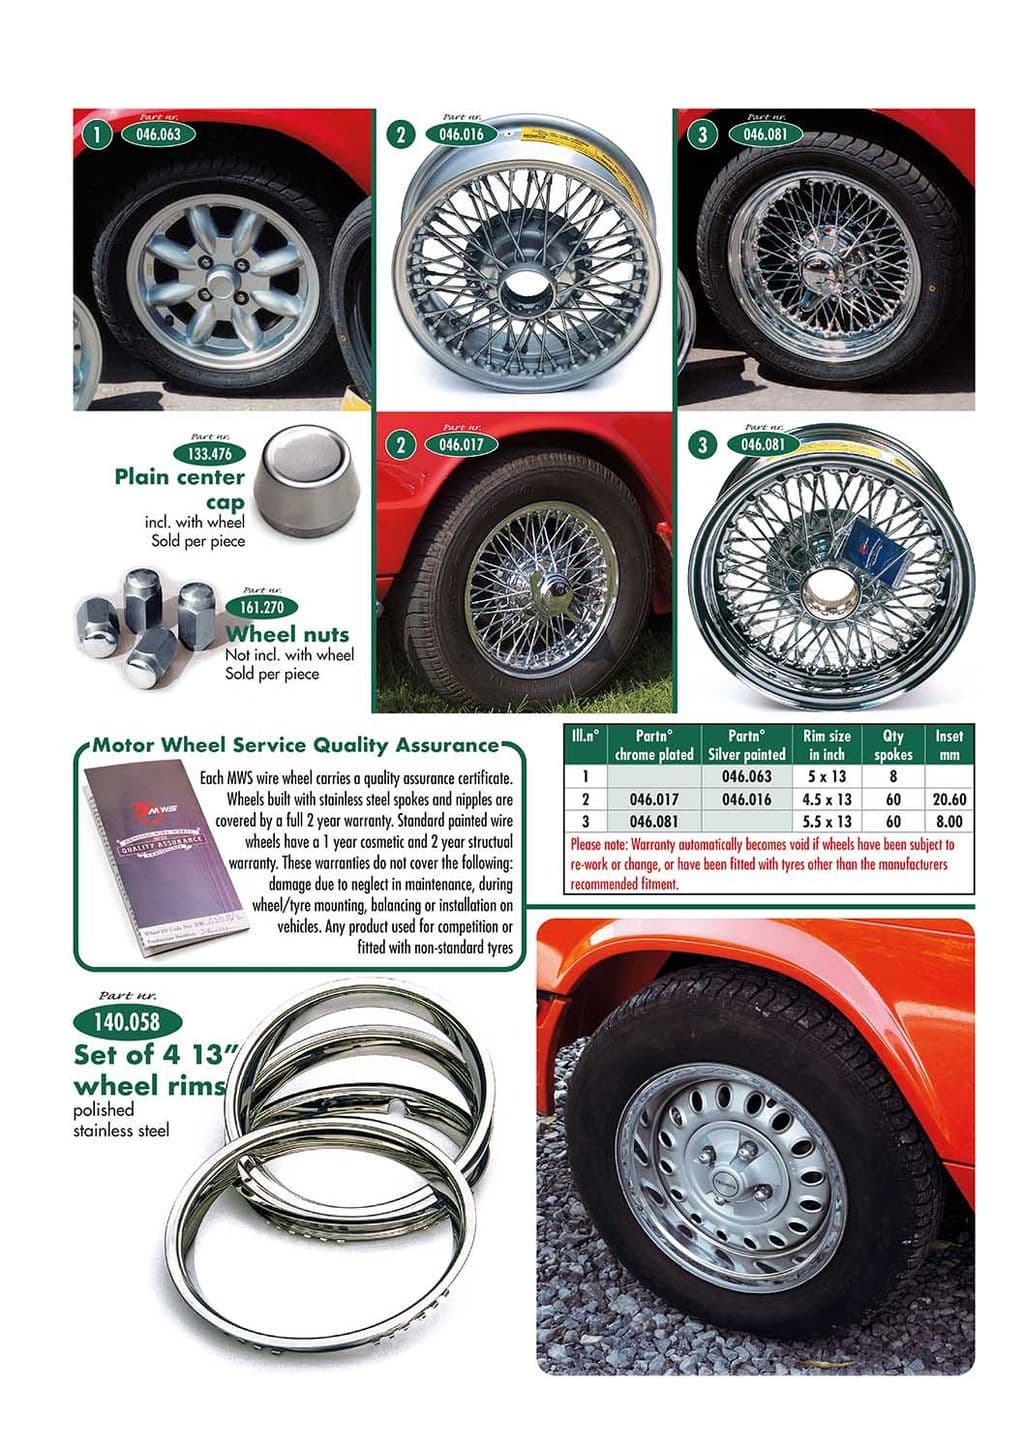 Wheels & accessories - Steel wheels & fittings - Car wheels, suspension & steering - Triumph GT6 MKI-III 1966-1973 - Wheels & accessories - 1